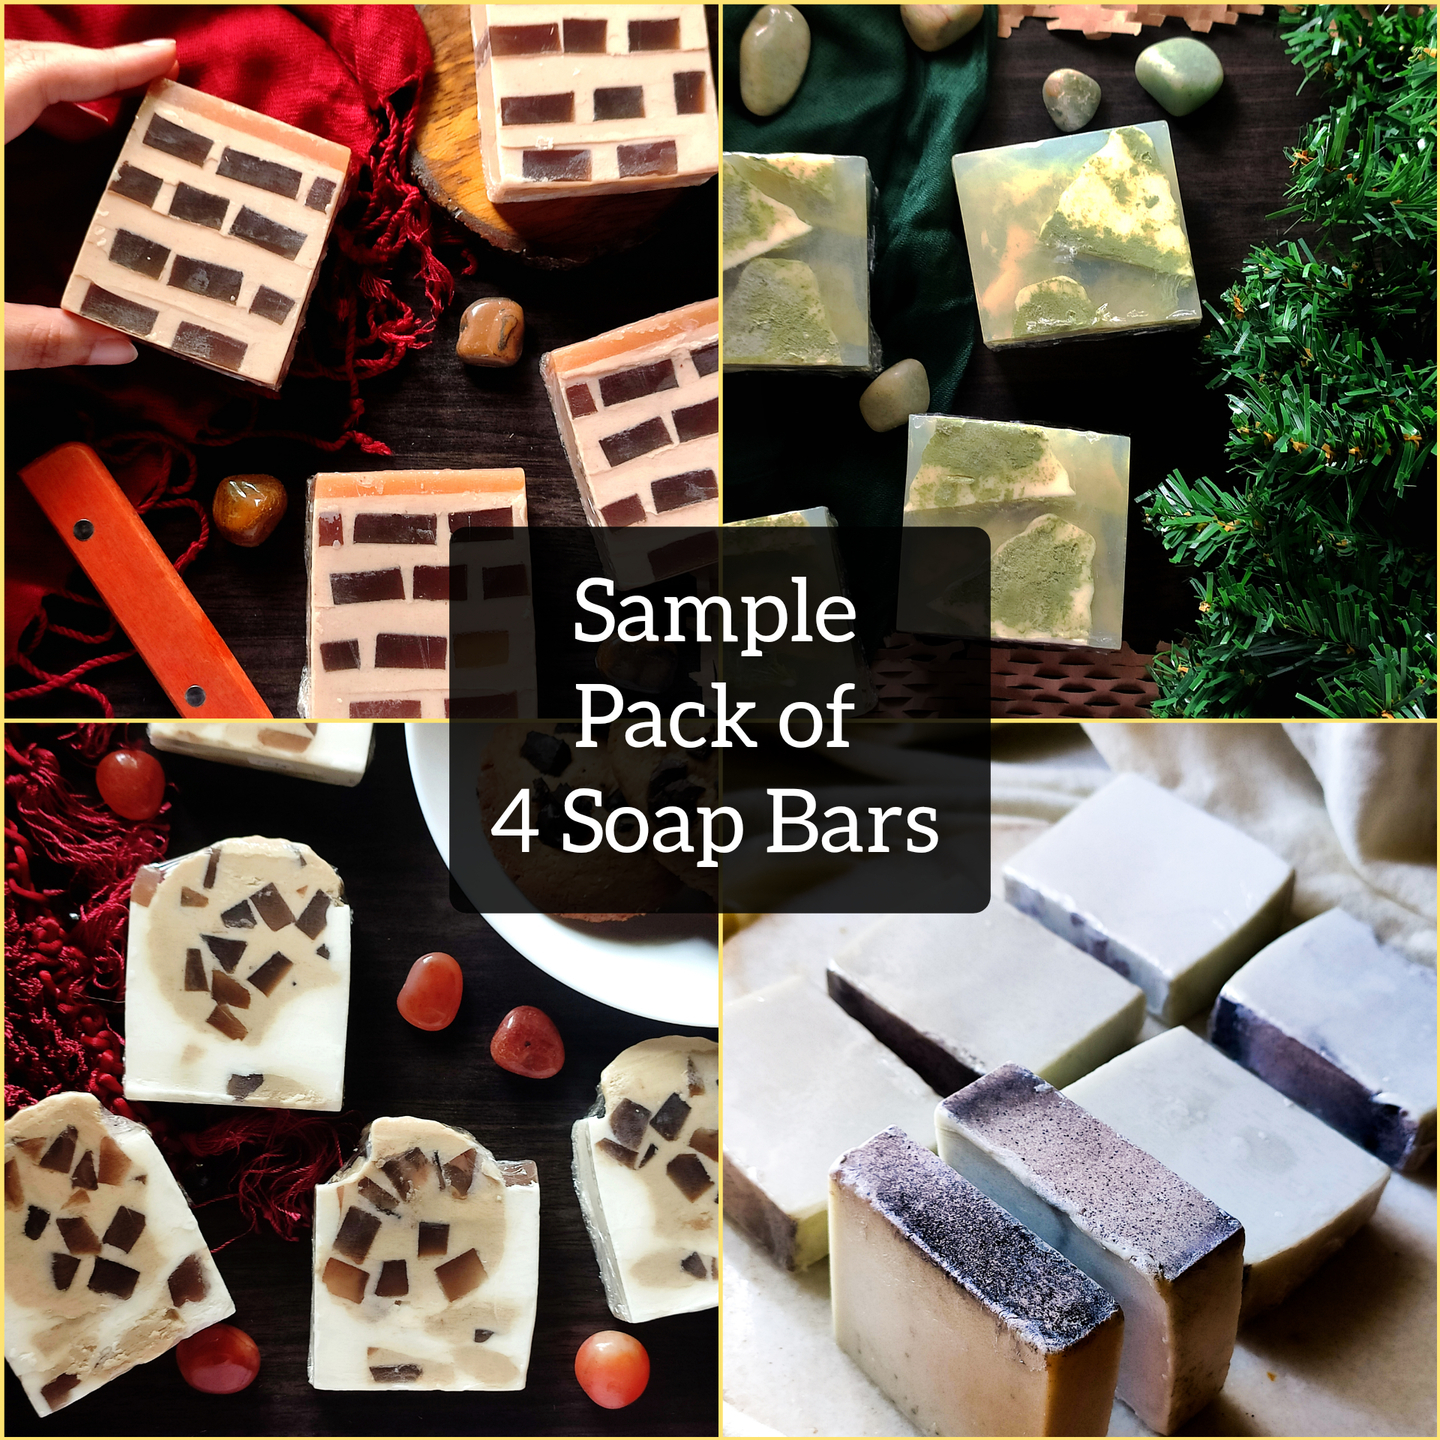 Sample Pack of 4 Soap Bars - For Dry Skin